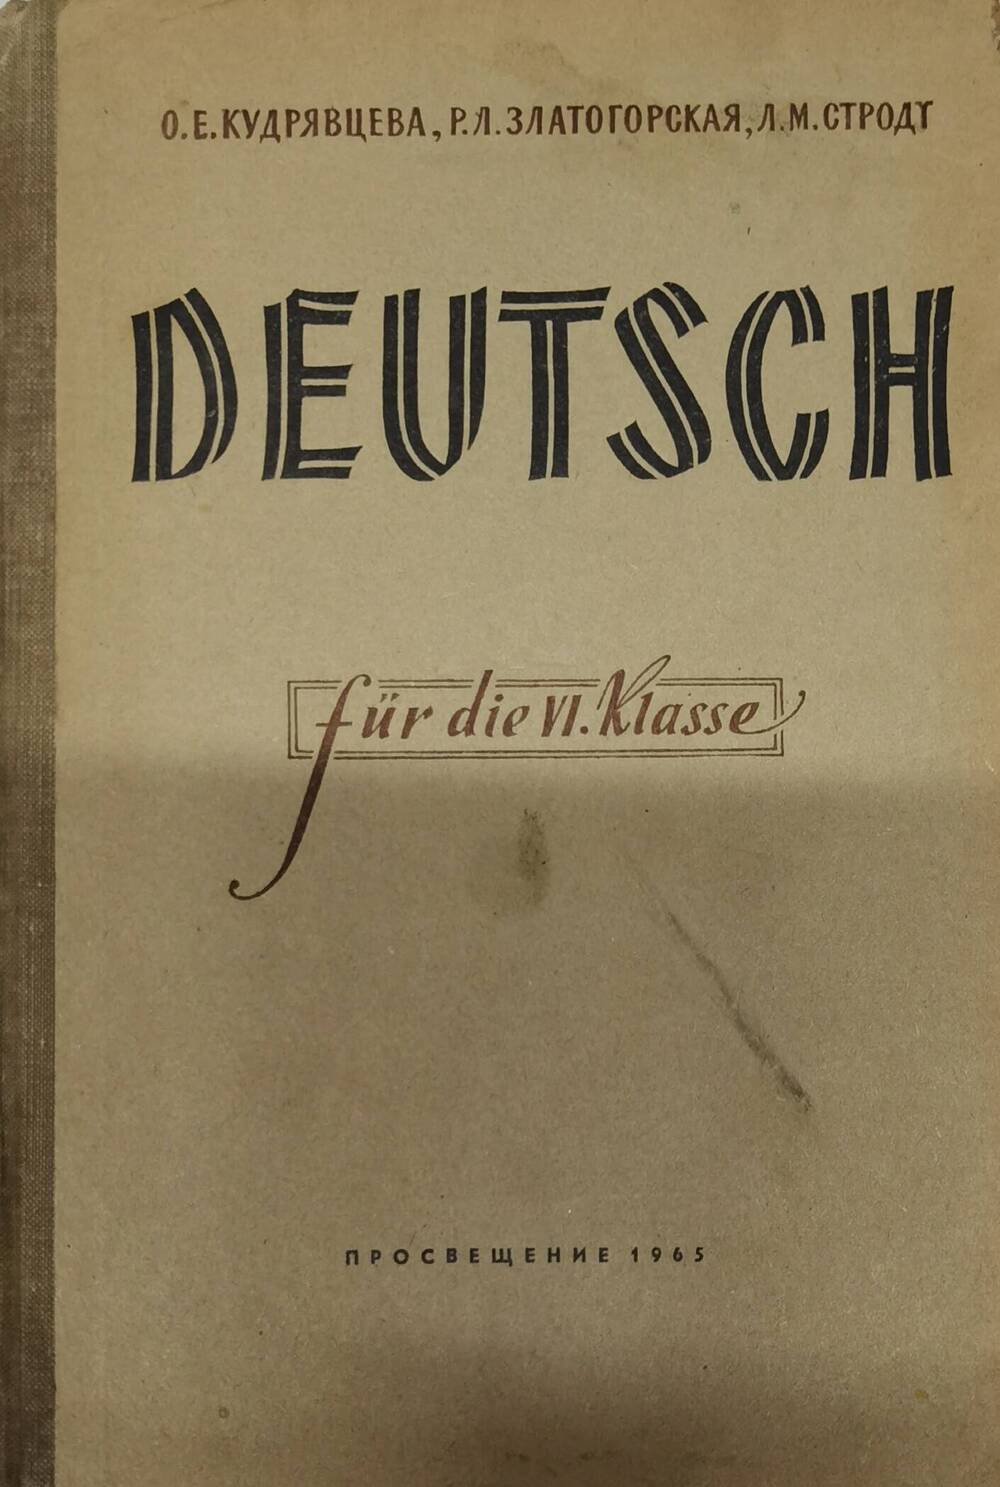 Учебник немецкого языка для 6 класса, 1965 г.